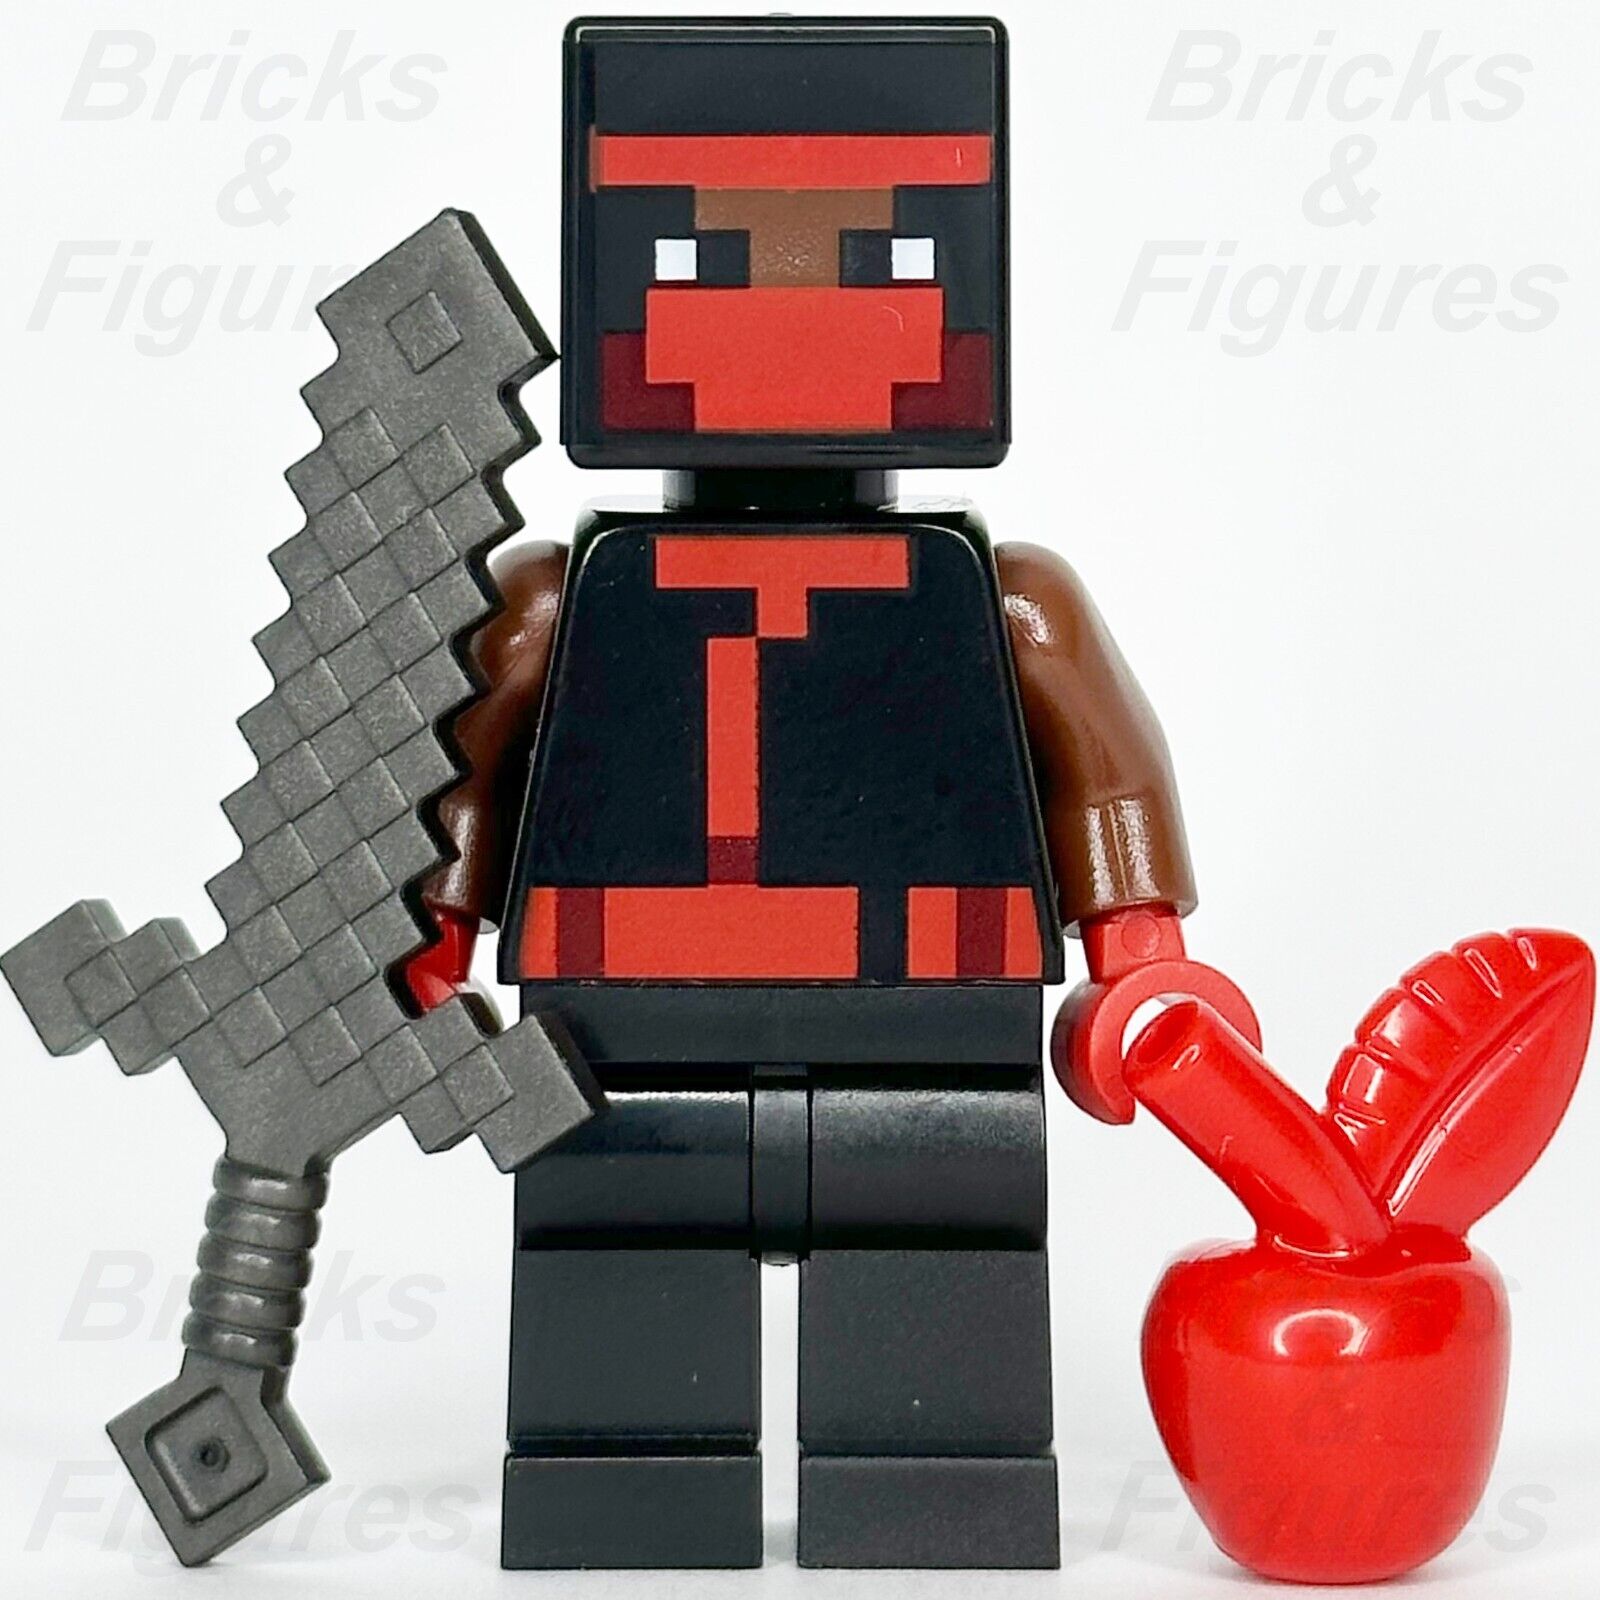 レゴ マインクラフト 忍者 ミニフィギュア 剣と赤いリンゴ付き 21183 662304 min112